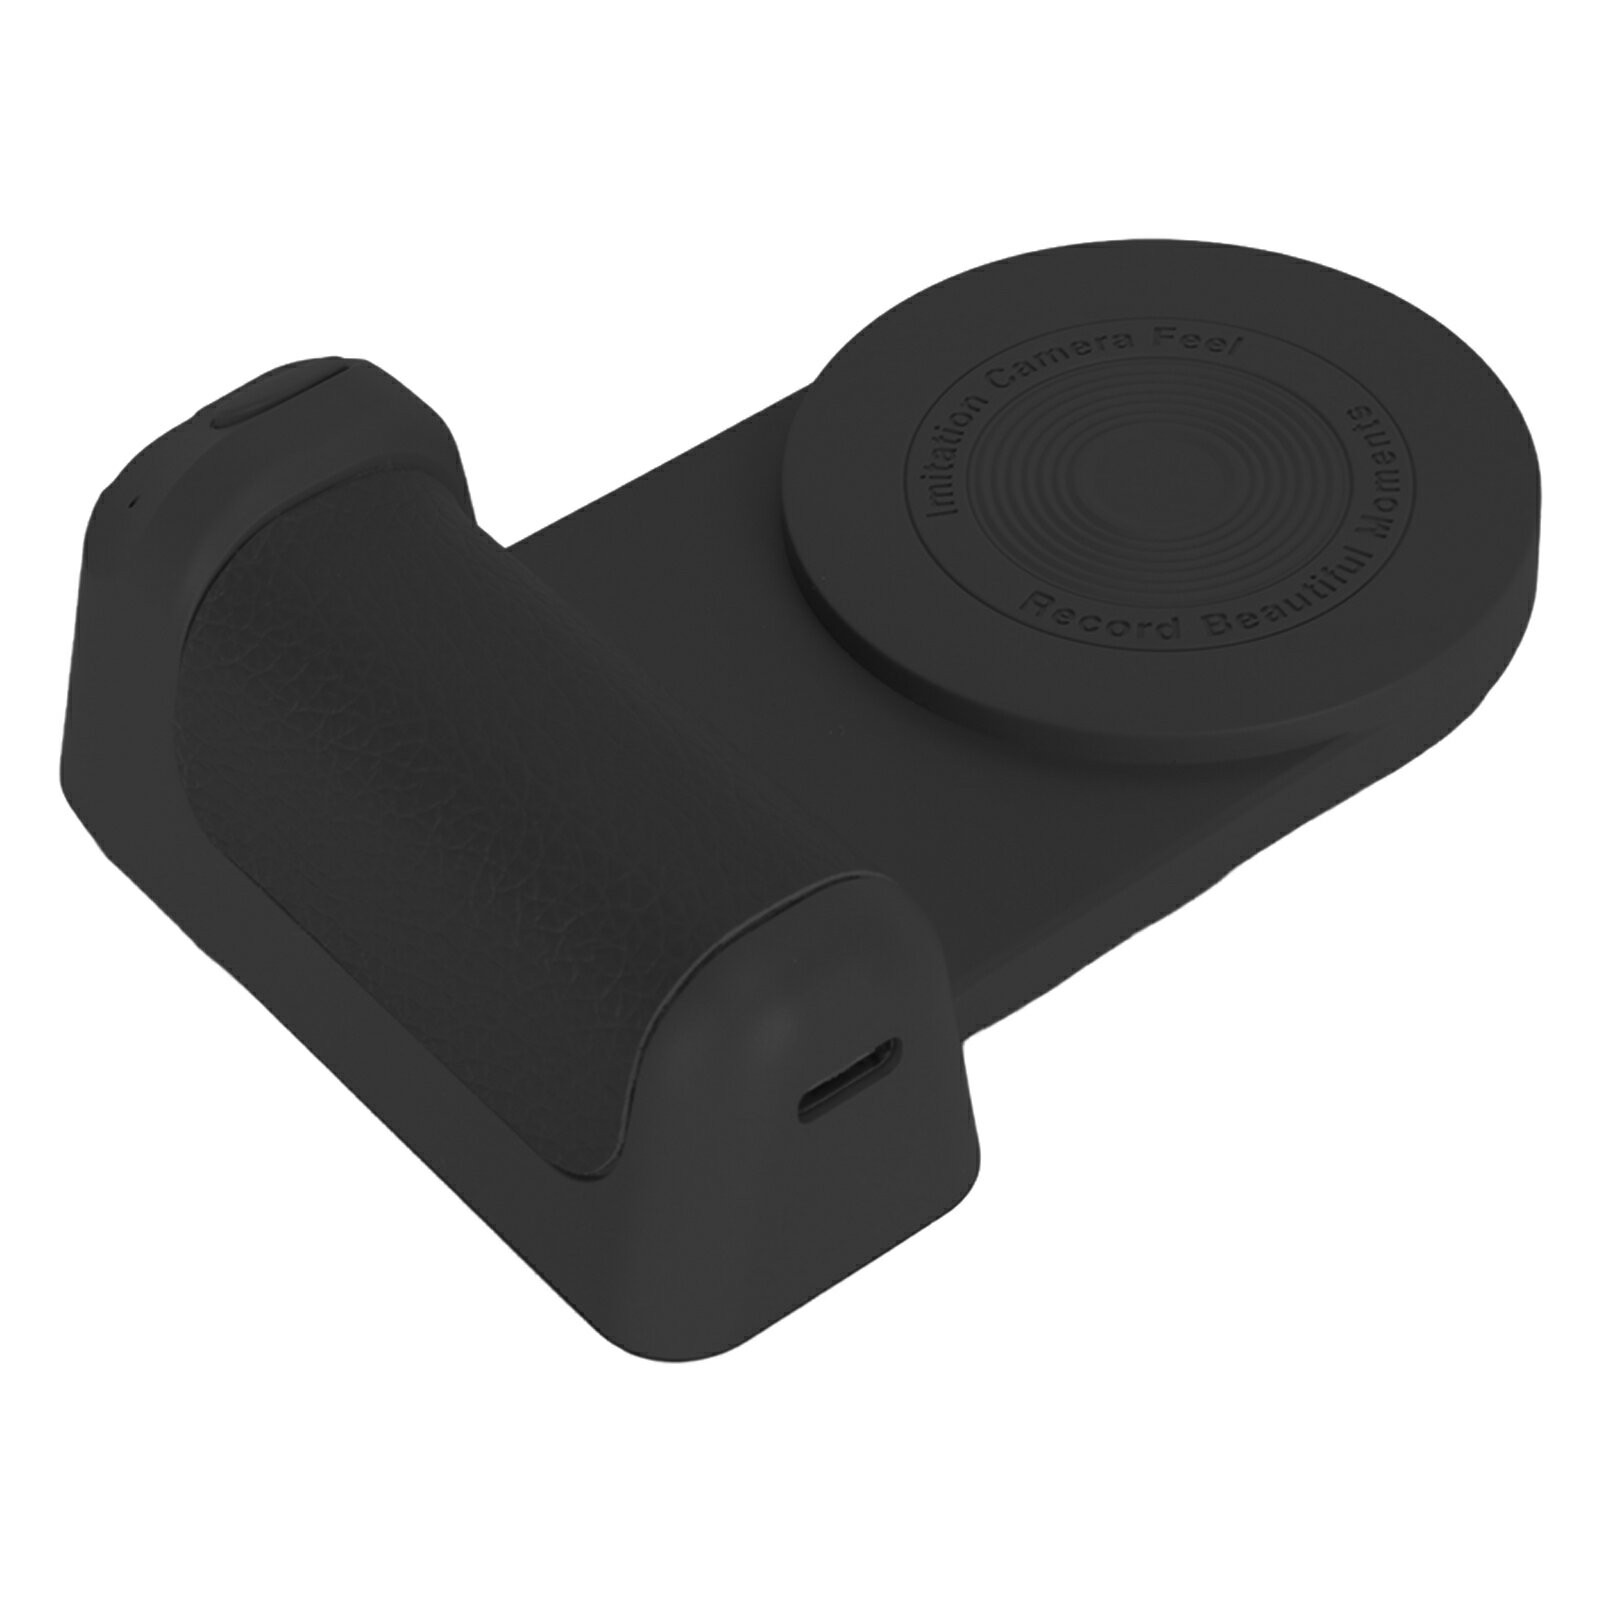 磁気カメラハンドルBluetoothブラケット ワイヤレスカメラシャッター付き電話カメラグリップ ビデオ写真撮影用Bluetoothワイヤレスリモコン付きカメラグリップホルダースタンド (黒)